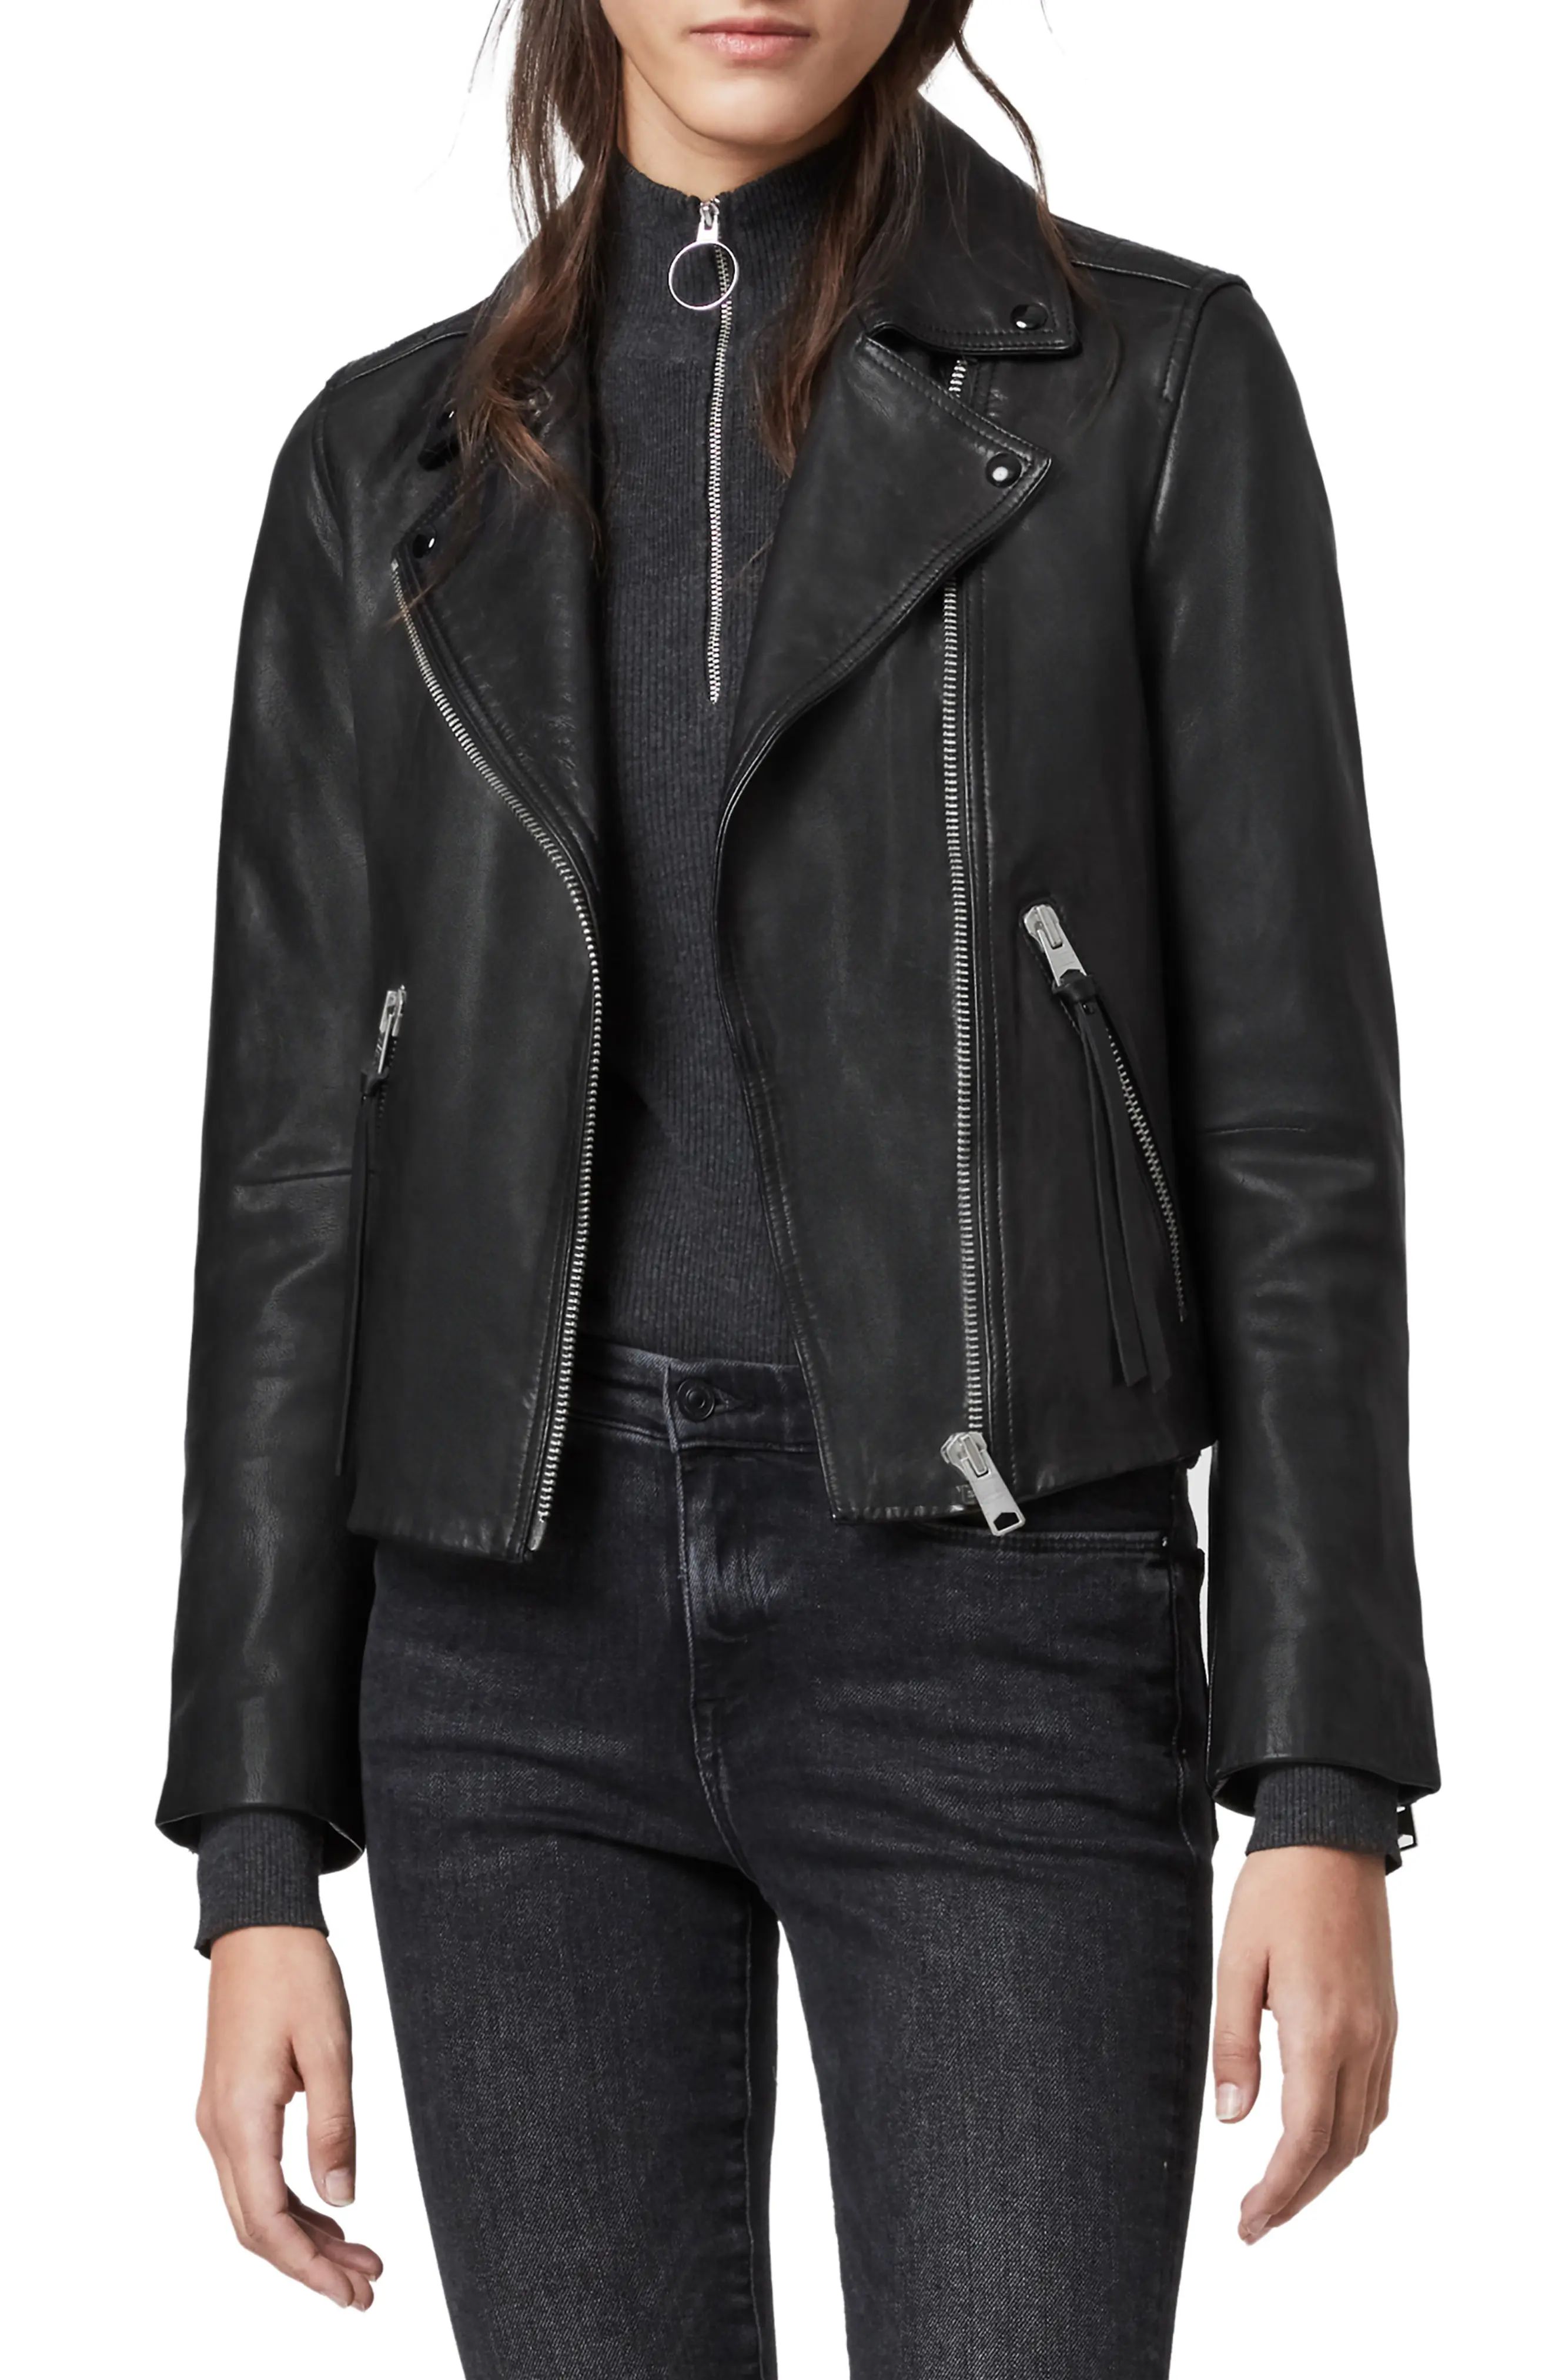 AllSaints Dalby Leather Biker Jacket, Size 00 in Black at Nordstrom | Nordstrom